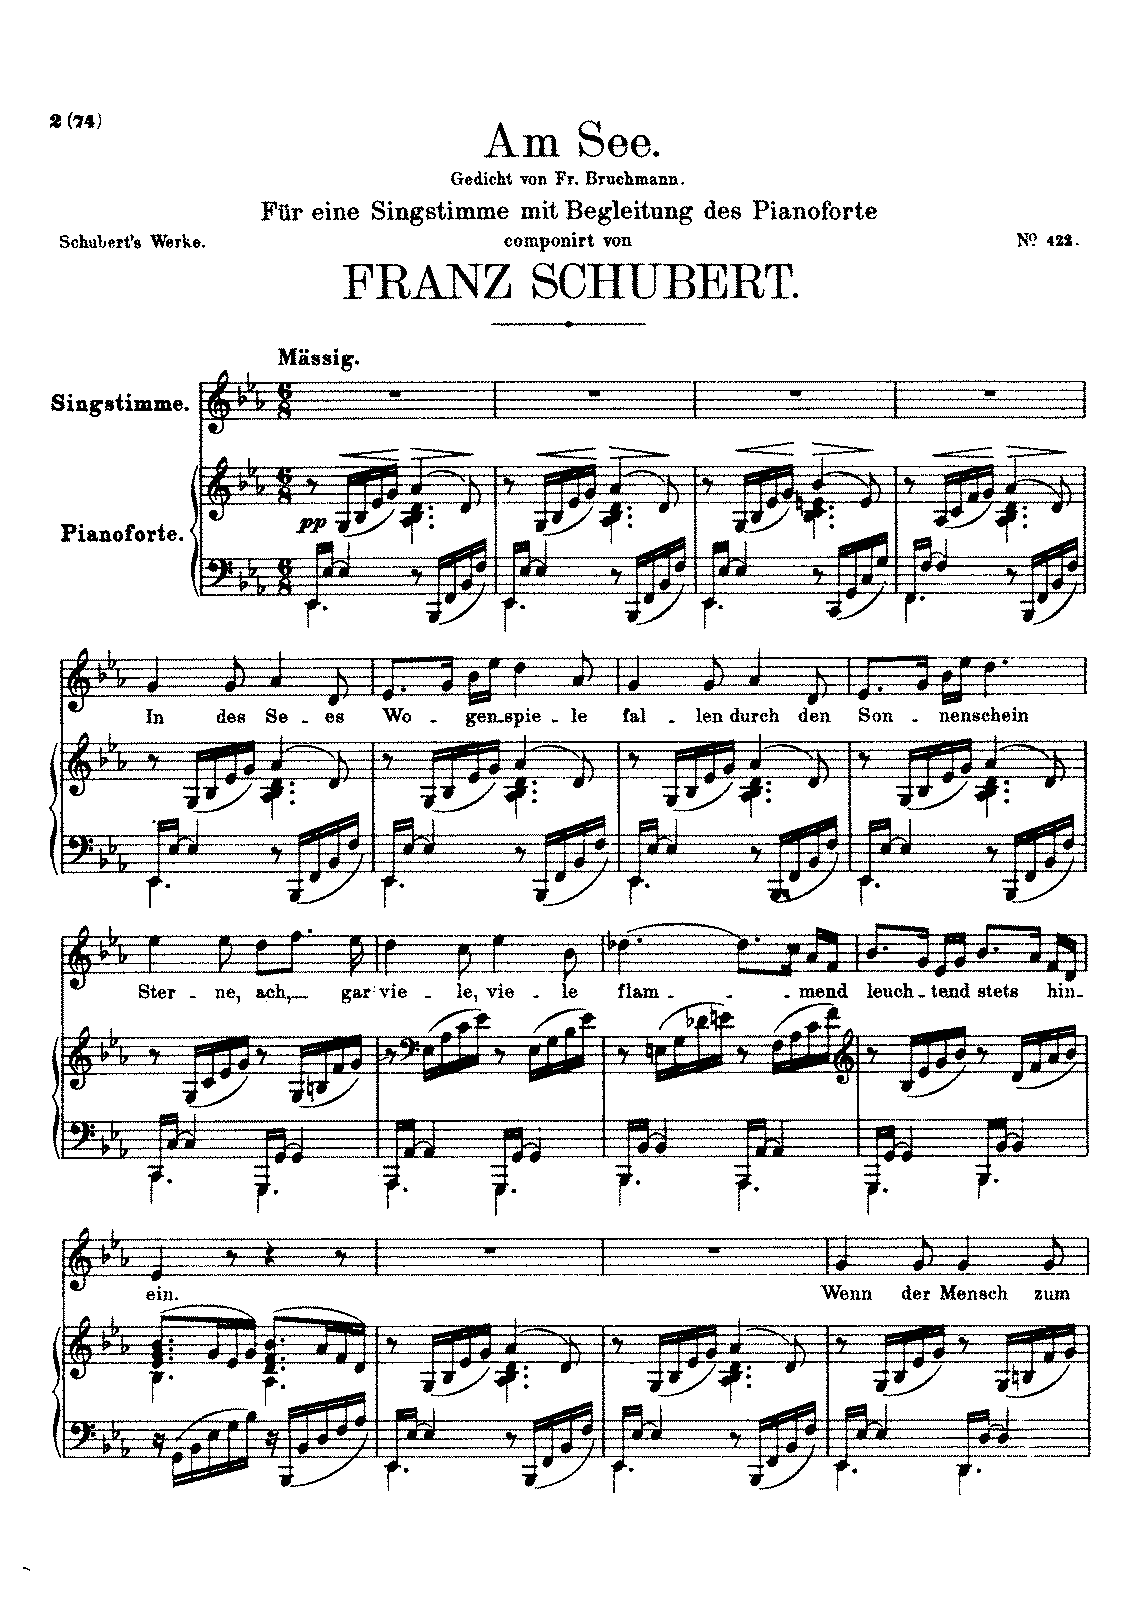 Am See, D.746 (Schubert, Franz) - IMSLP